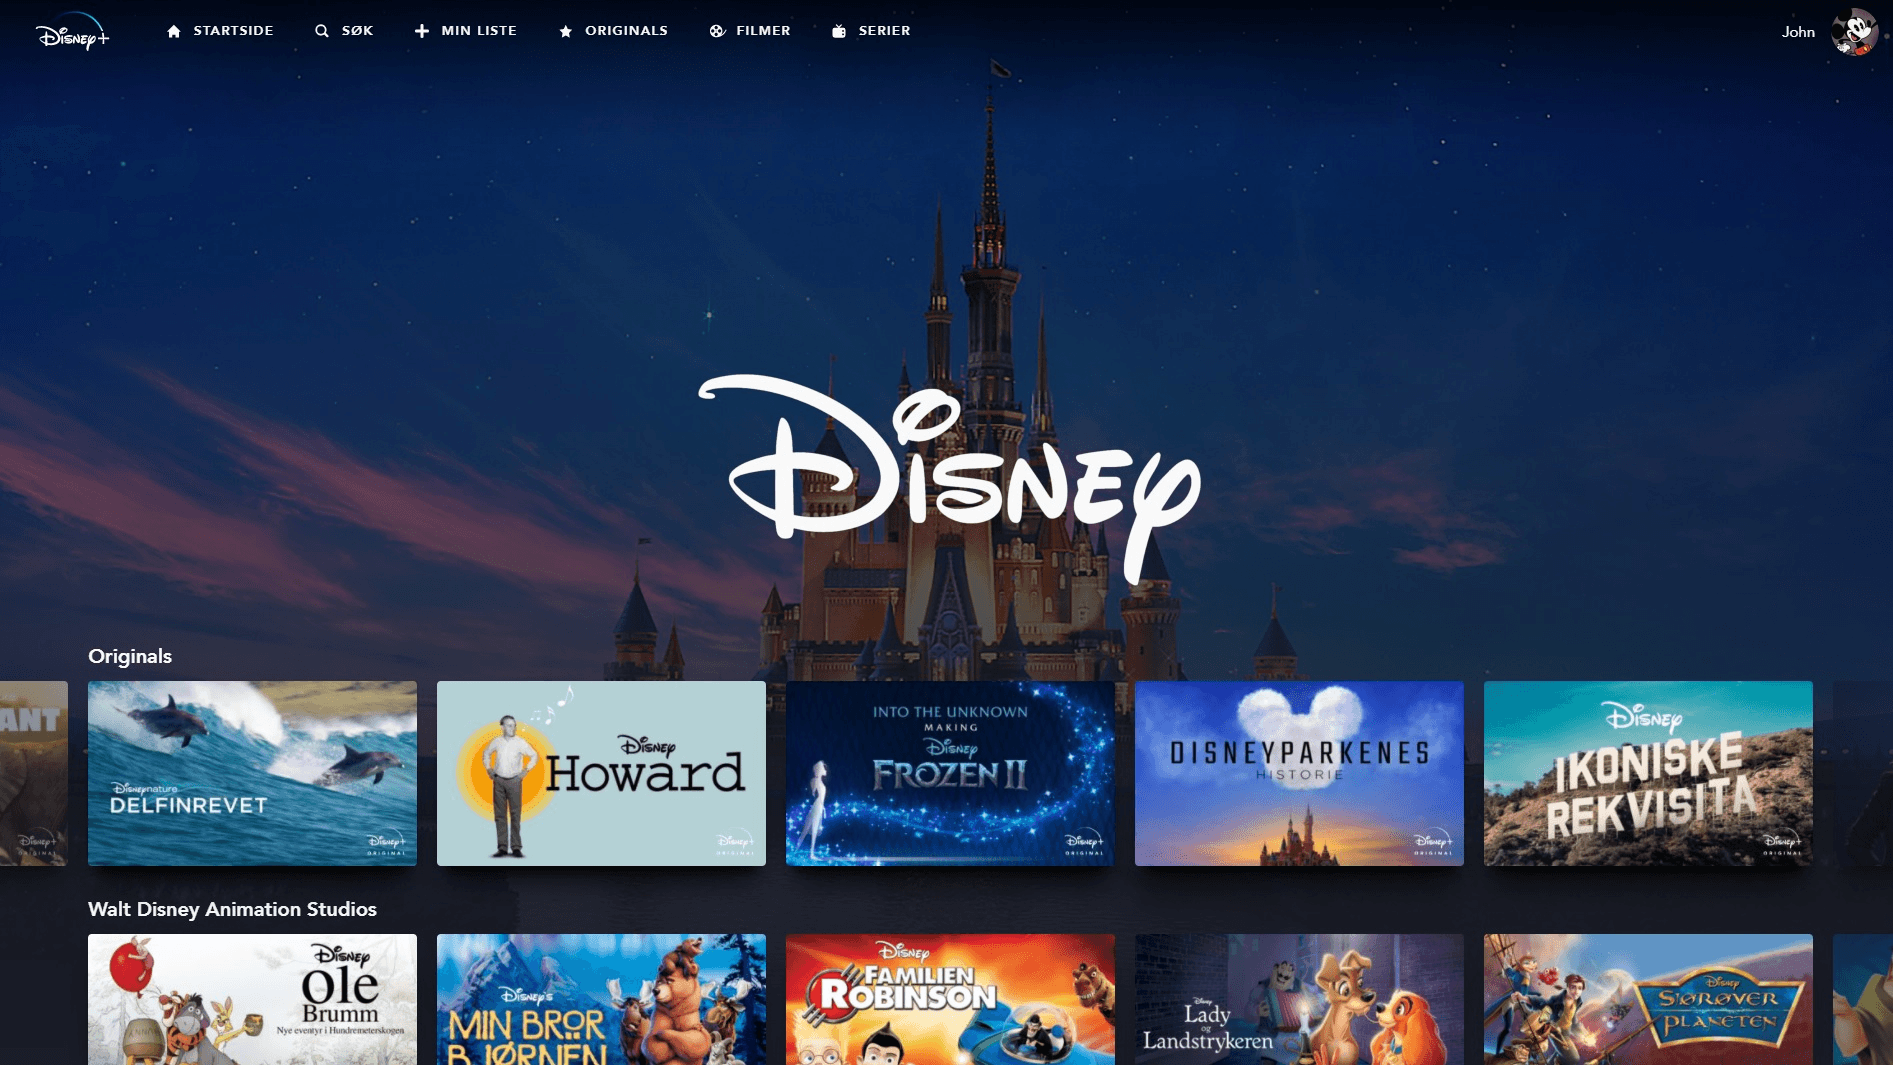 El catálogo de Disney Plus ofrece la selección más amplia de películas y series de televisión diversas. Hay algo para todos los gustos y toda la familia